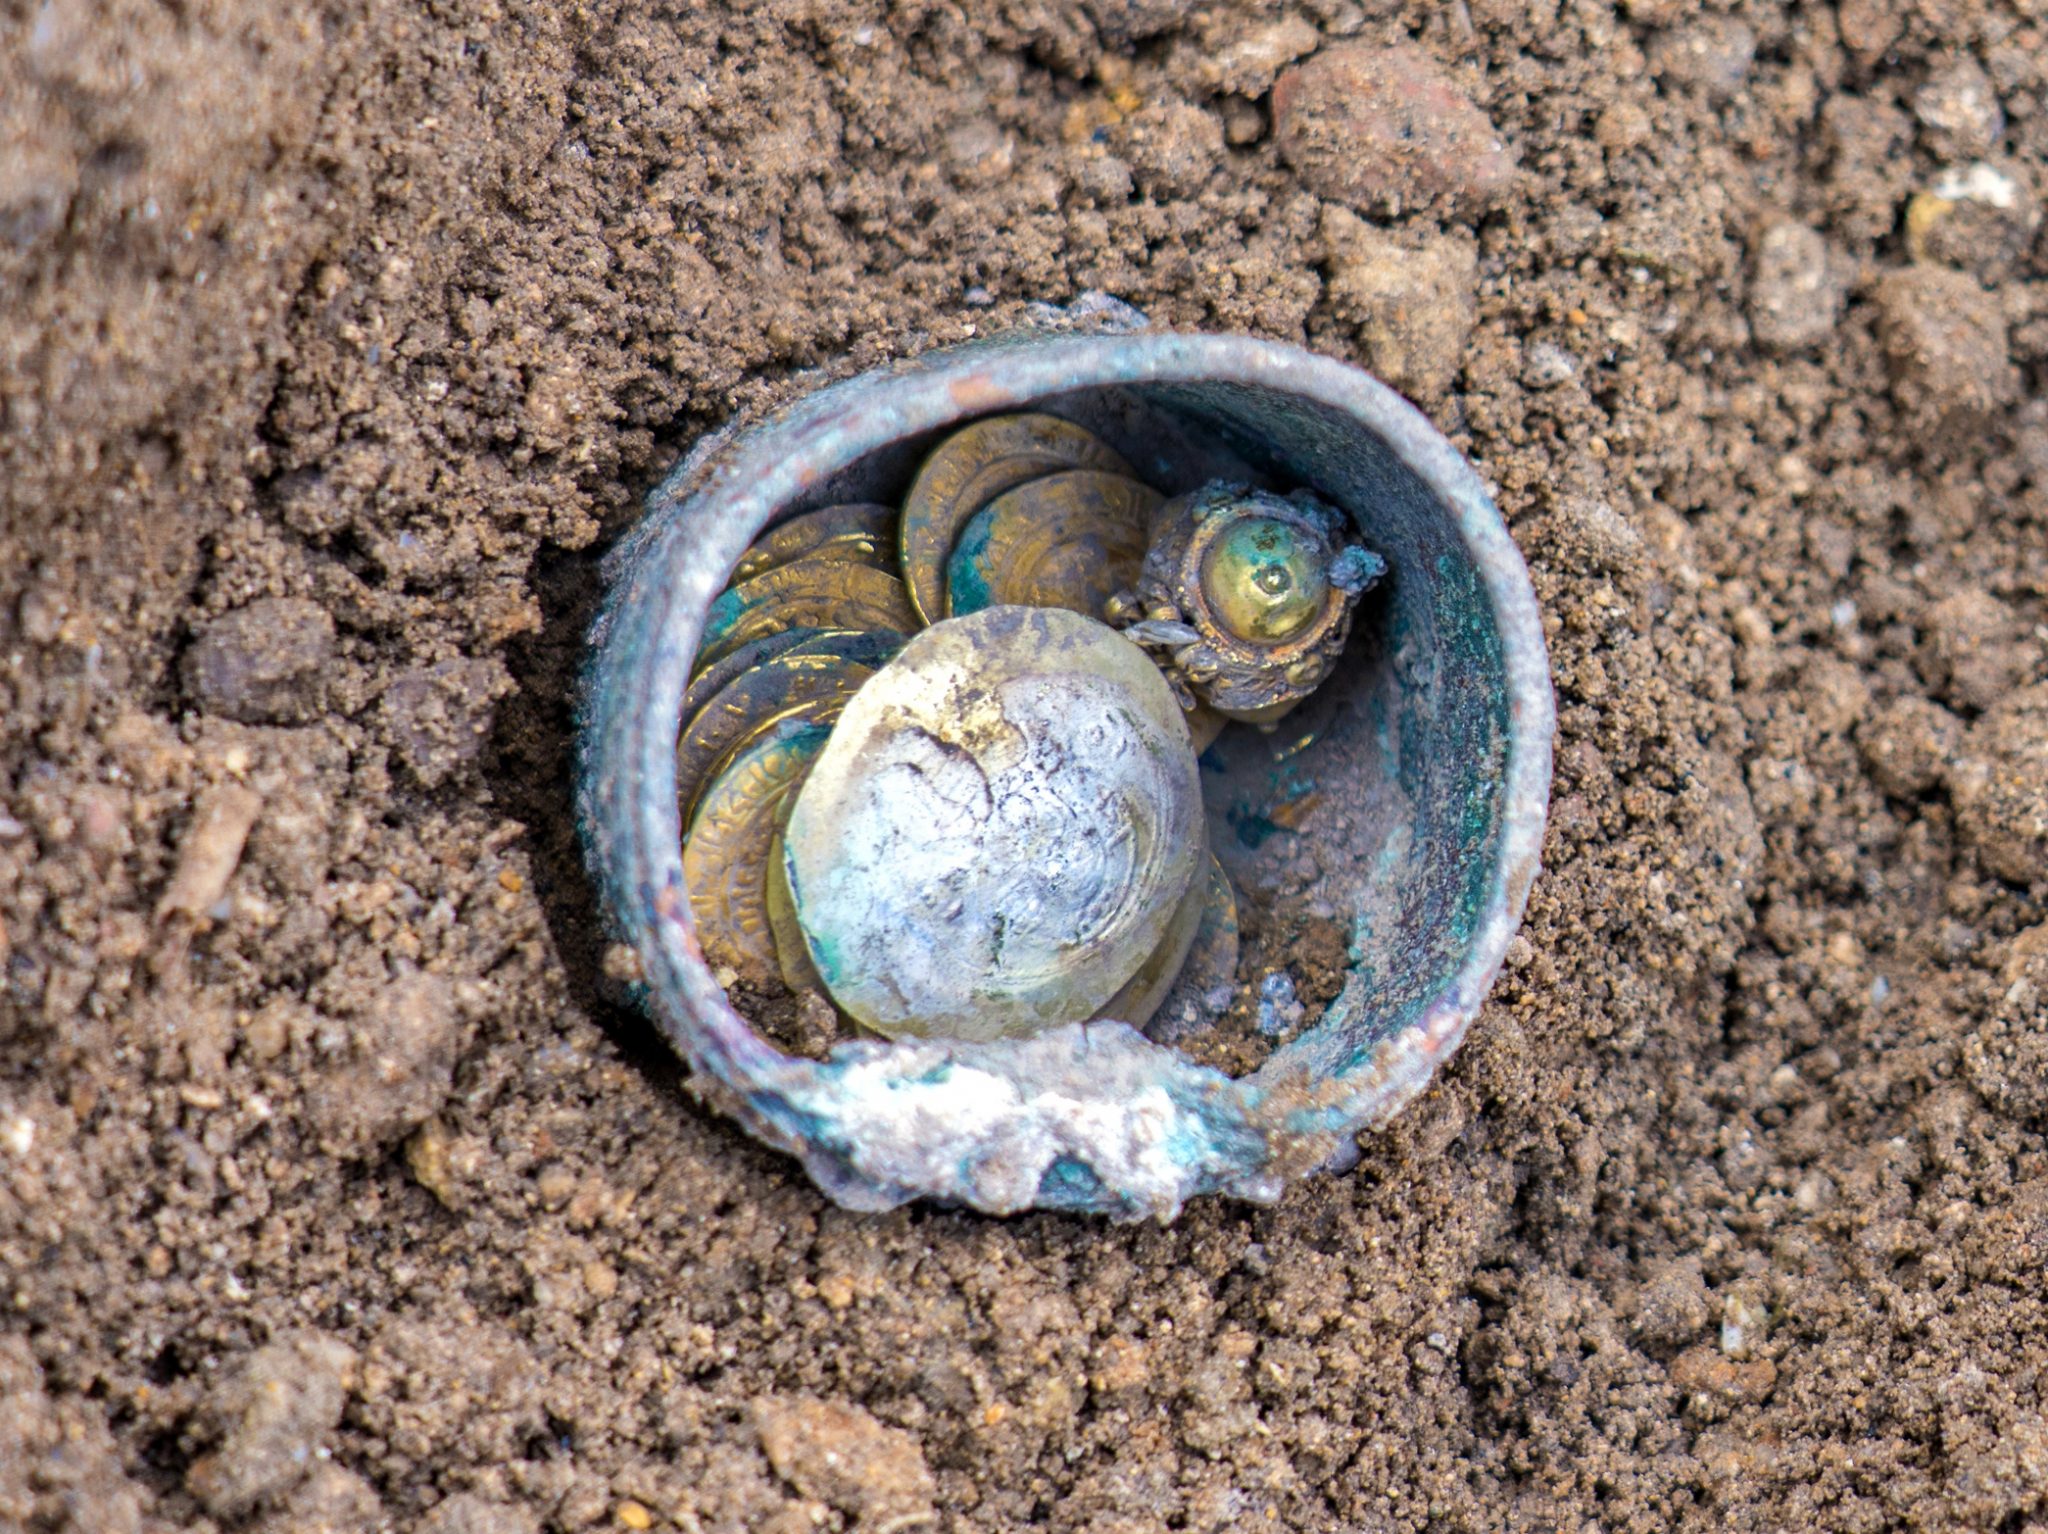 The rare cache found on site. Photo by Yaniv Berman, courtesy of the Caesarea Development Corporation